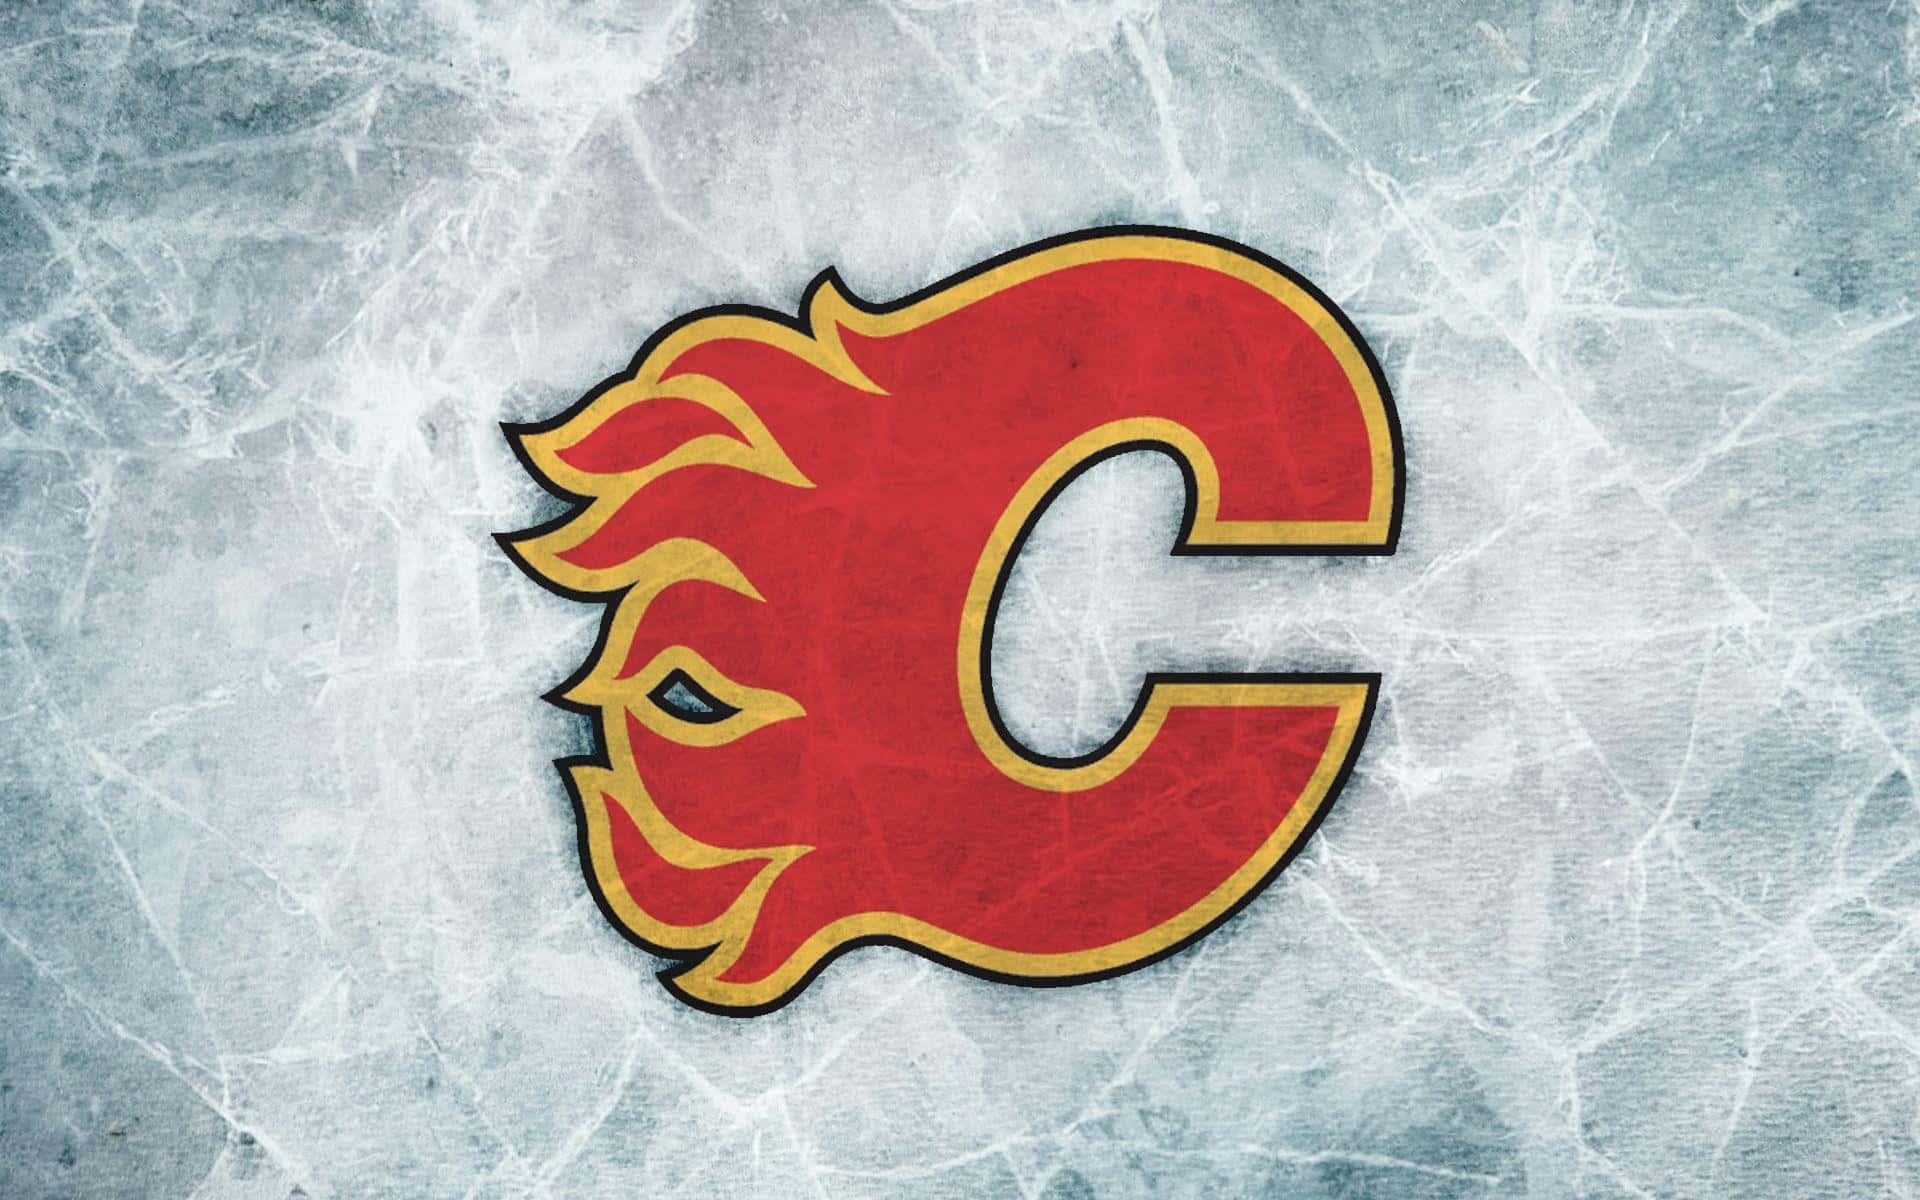 Enlogo Af Calgary Flames På Isen.